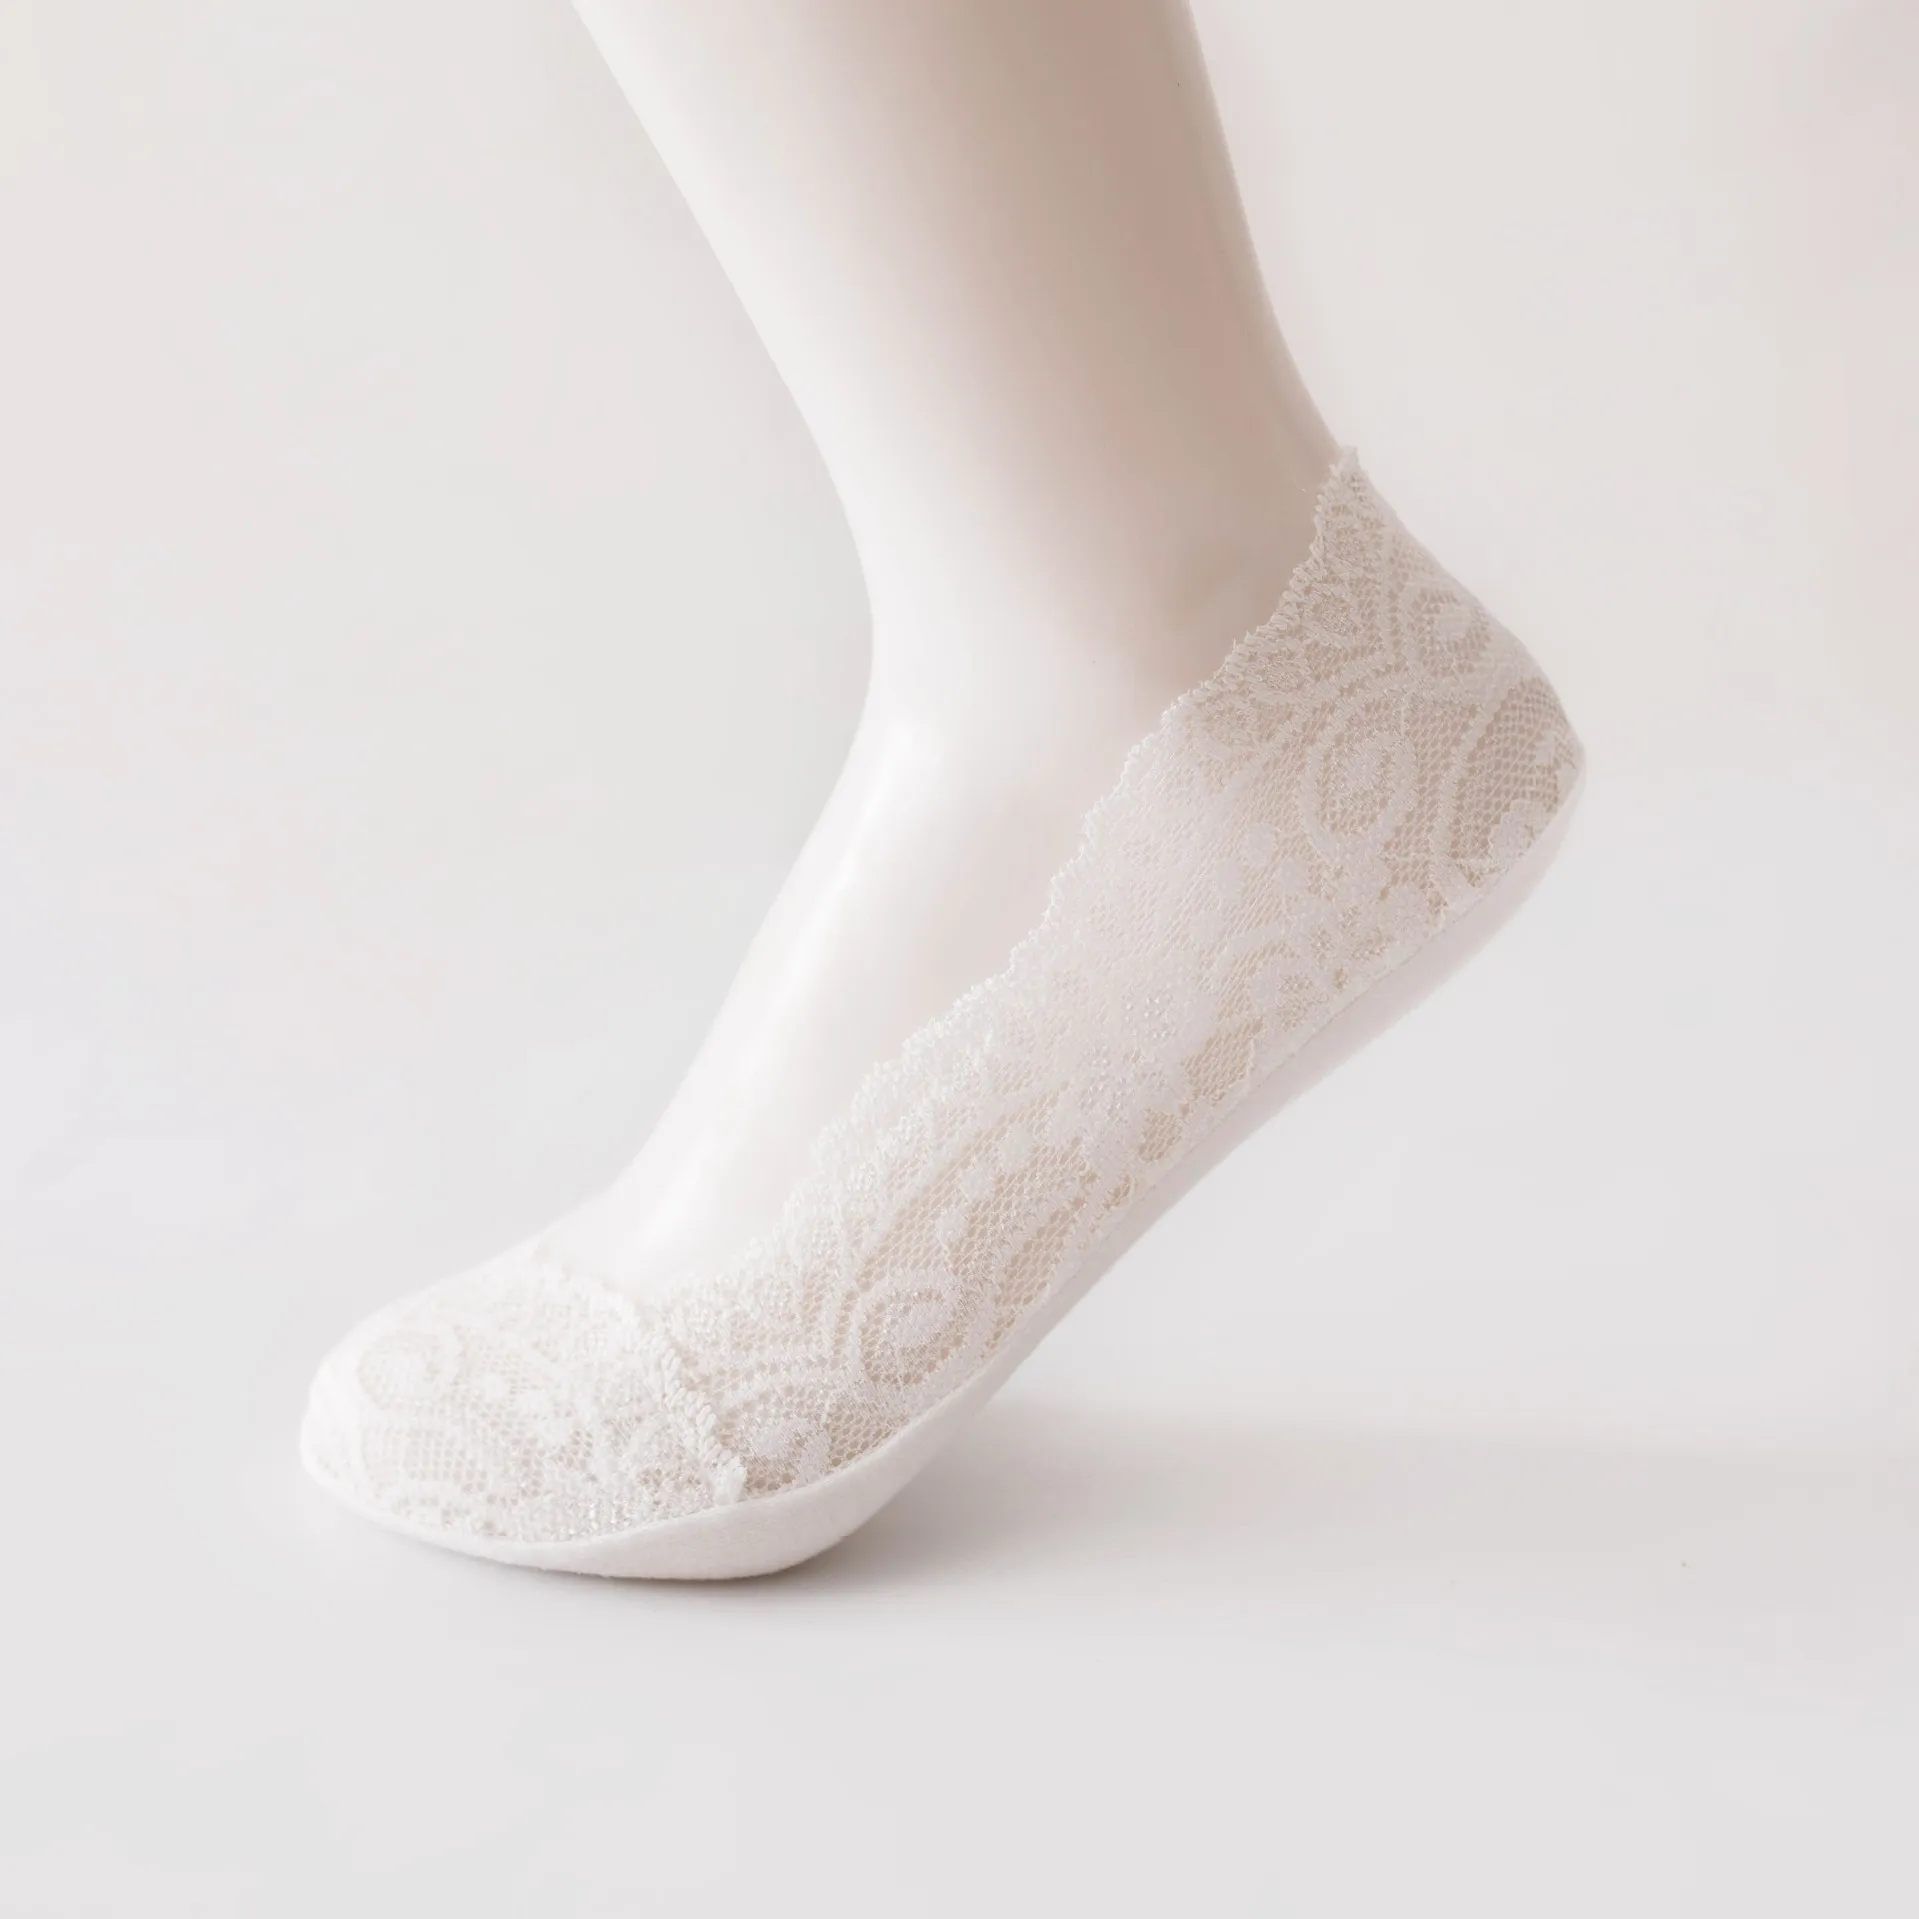 20 пара/лот; летние хлопковые женские короткие носки; модные носки; тапочки для девочек; удобные повседневные женские носки на высоком каблуке - Цвет: (1) white 20pair